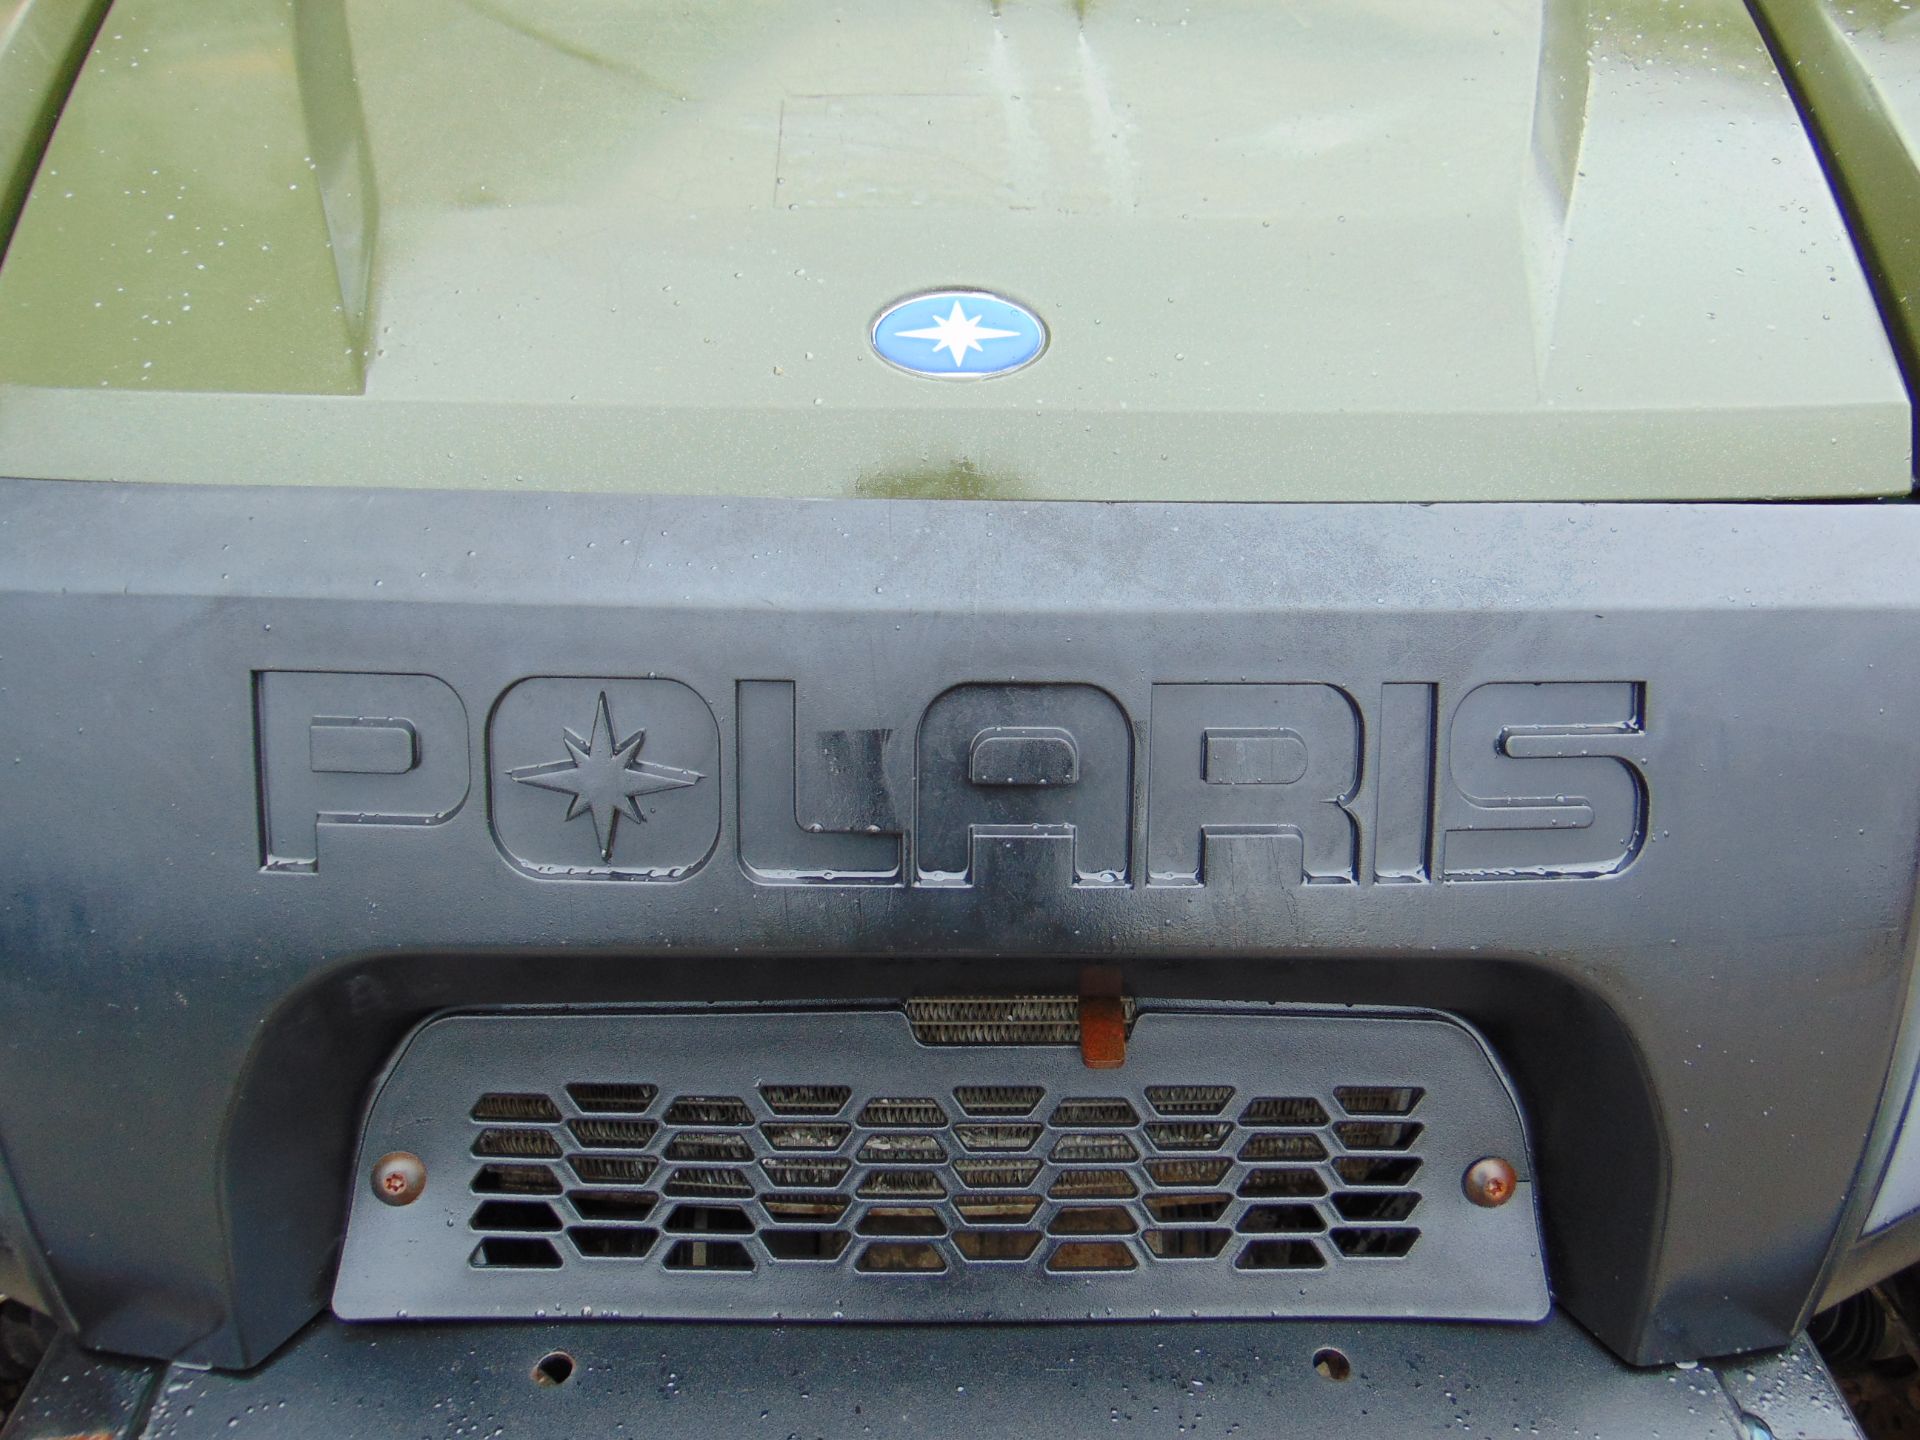 2013 Polaris Ranger 4WD ATV - Bild 19 aus 19